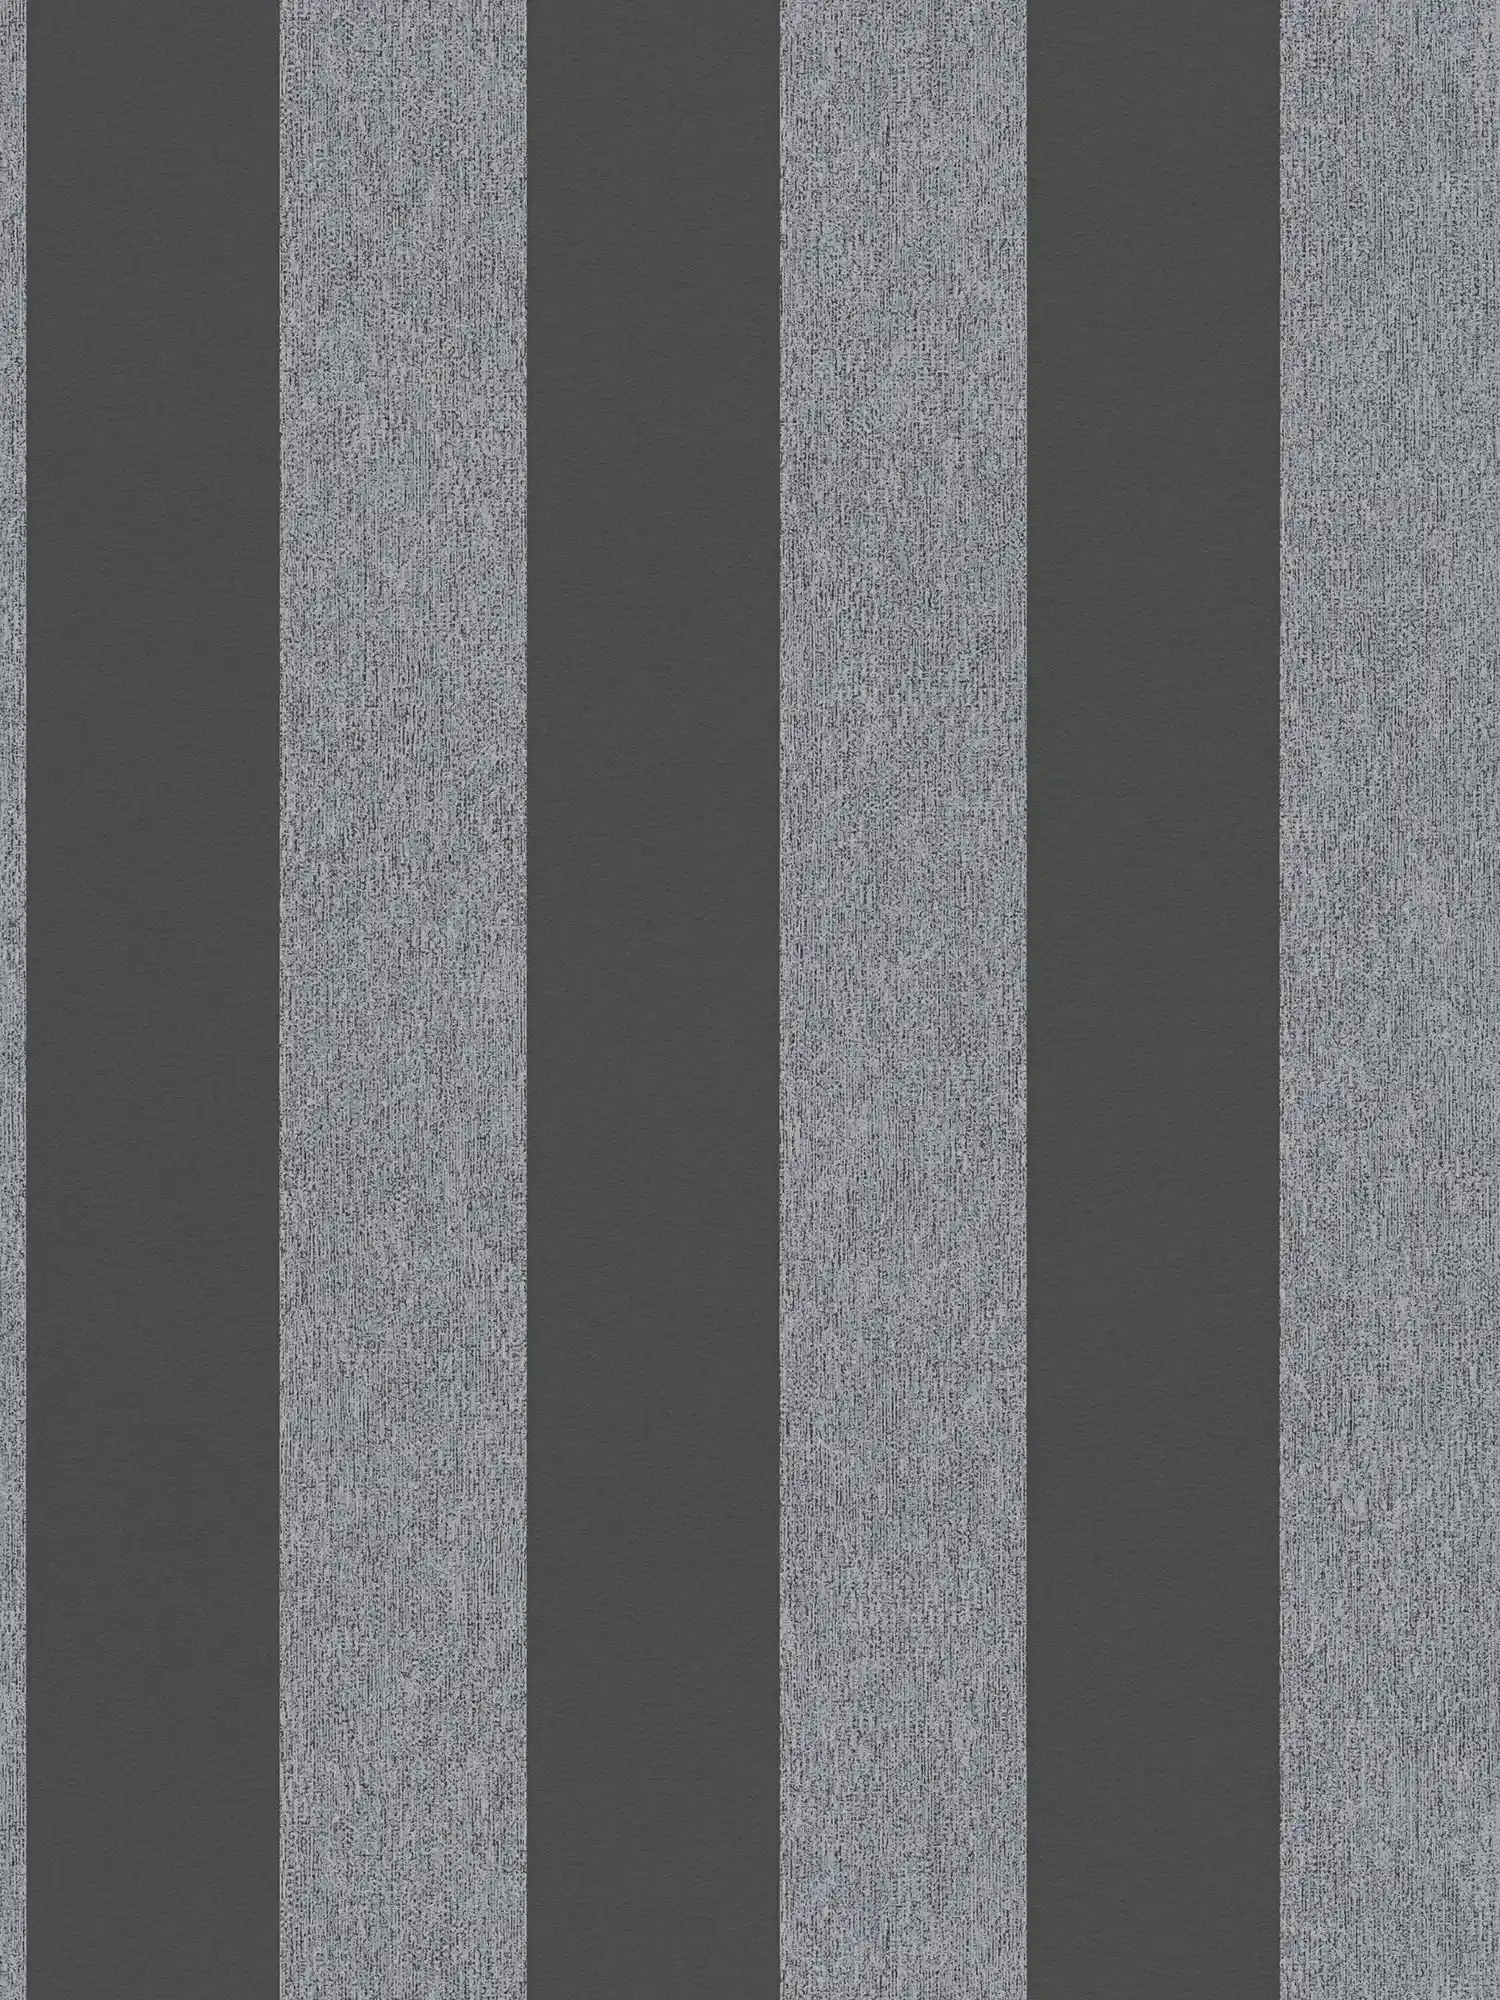         Stripes vliesbehang in matte structuurlook - zwart, grijs
    